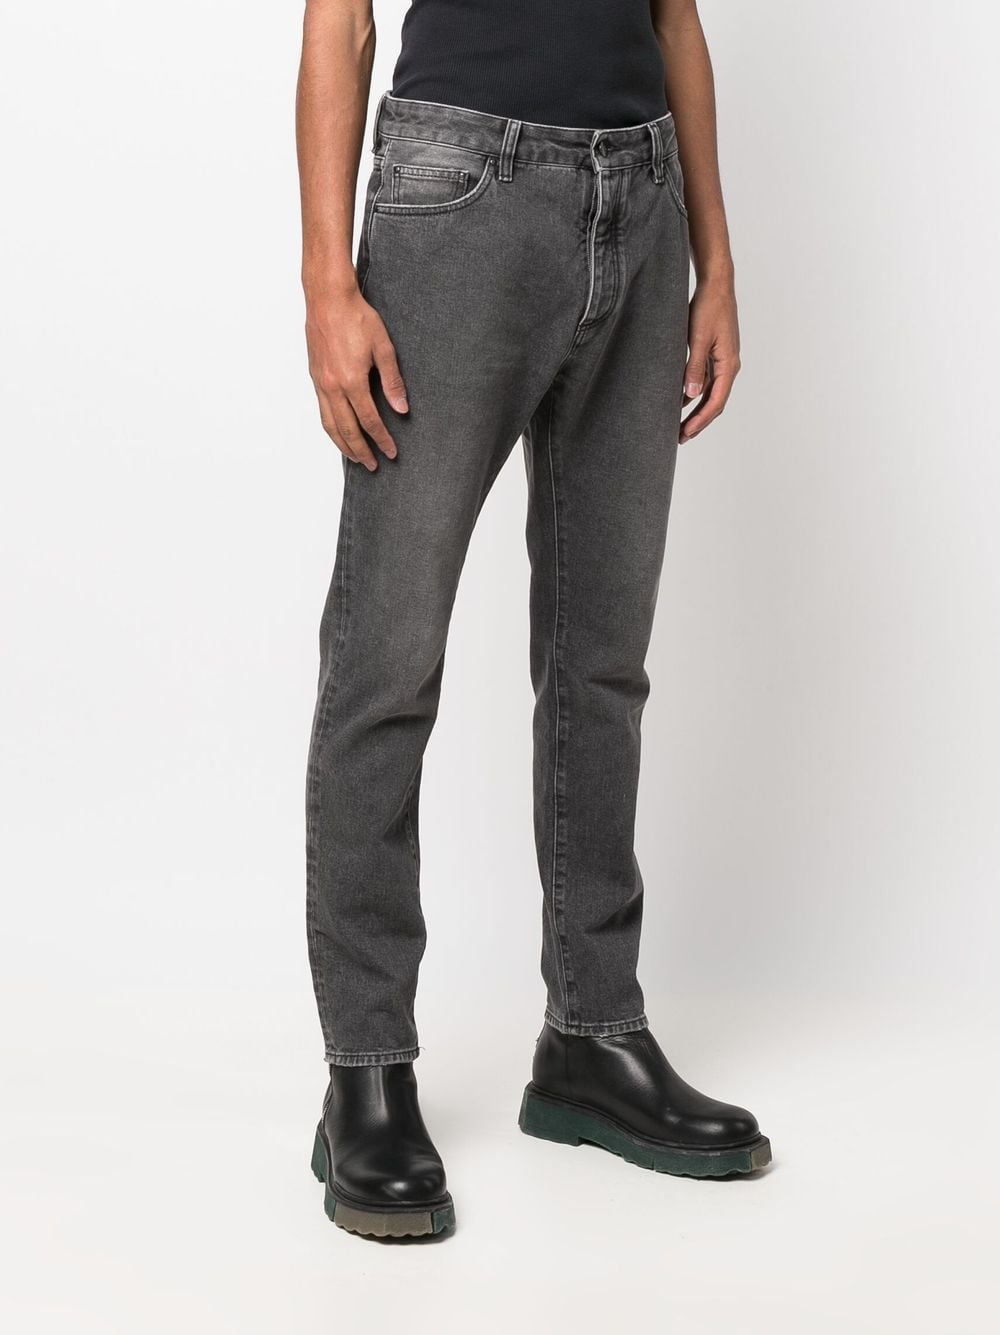 Jeans a gamba dritta in misto cotone nero sbiadito con stampa logo